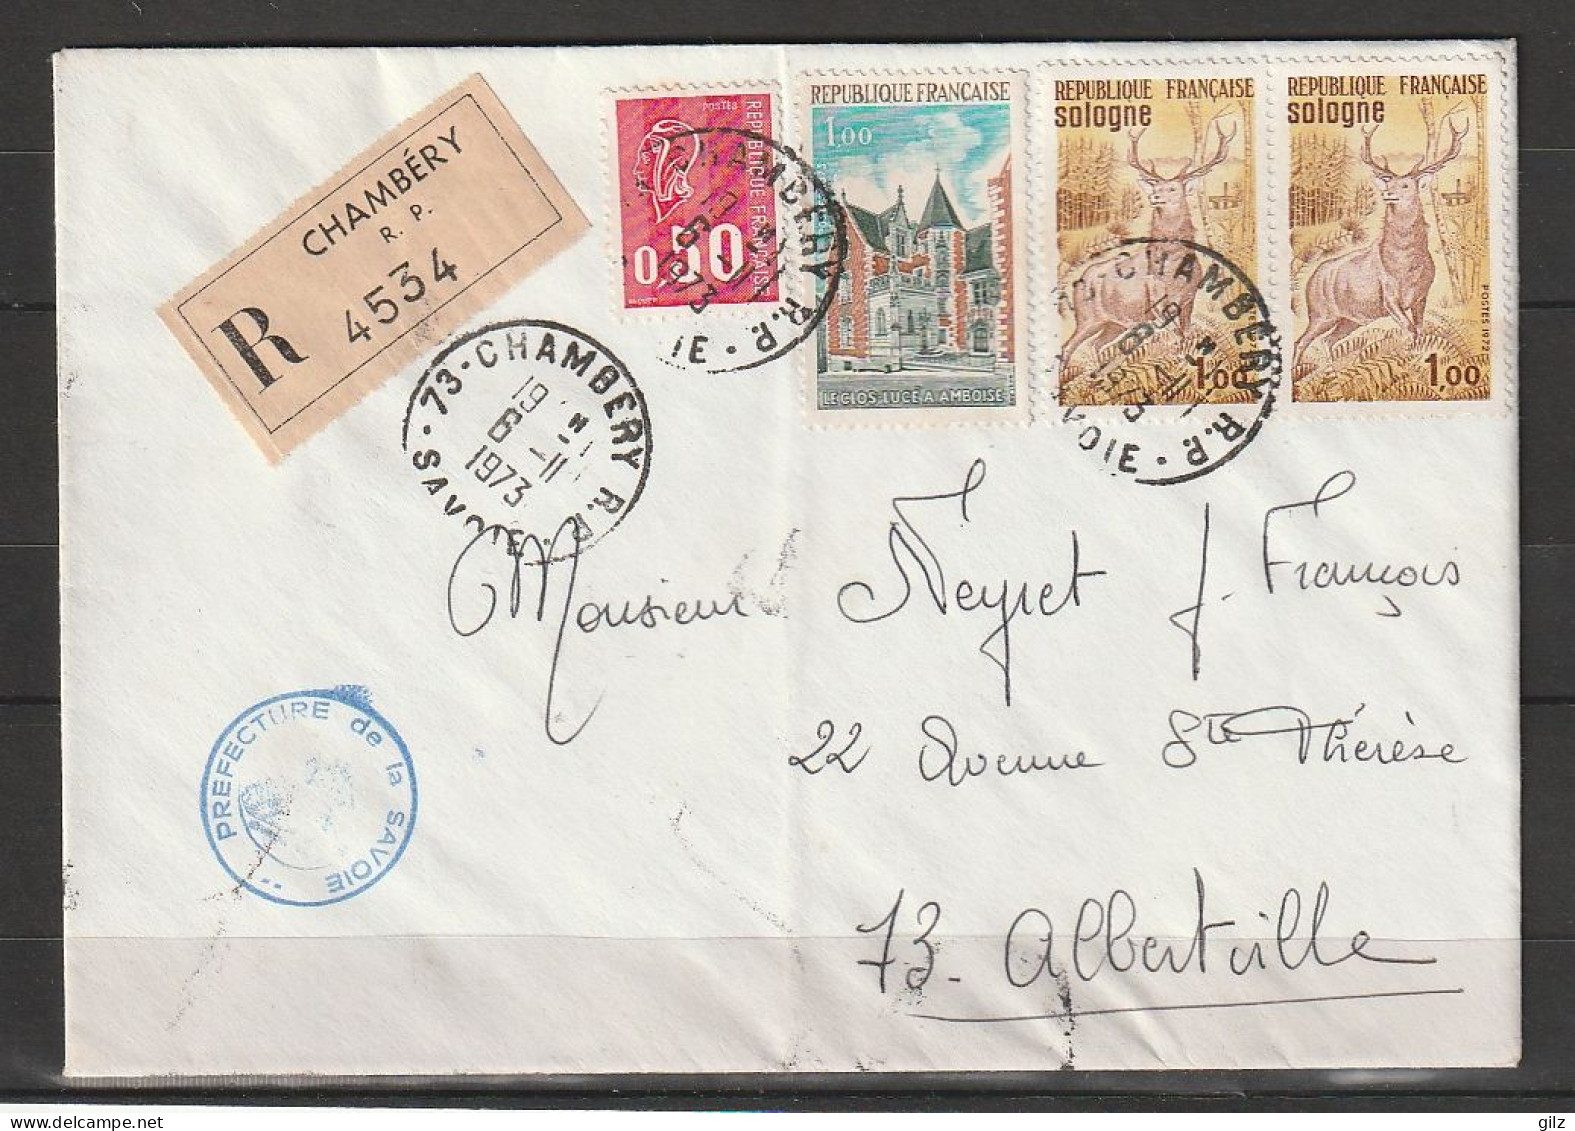 Lettre RECOMMANDEE De Chambéry Du6.11.1973 Affranchie Avec 4 Timbres - Briefe U. Dokumente